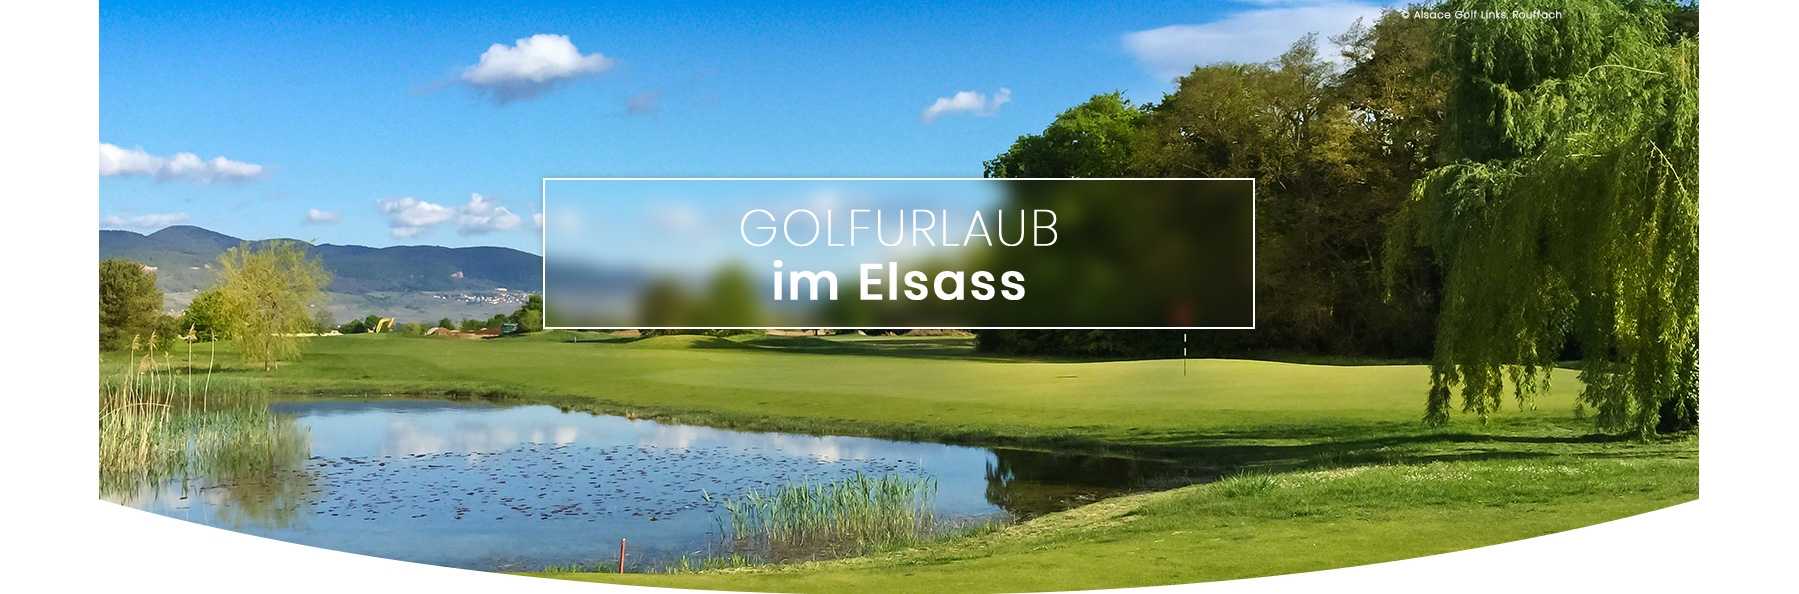 vud-golf-schwarzwald_header_golfurlaub-elsass_06-2019